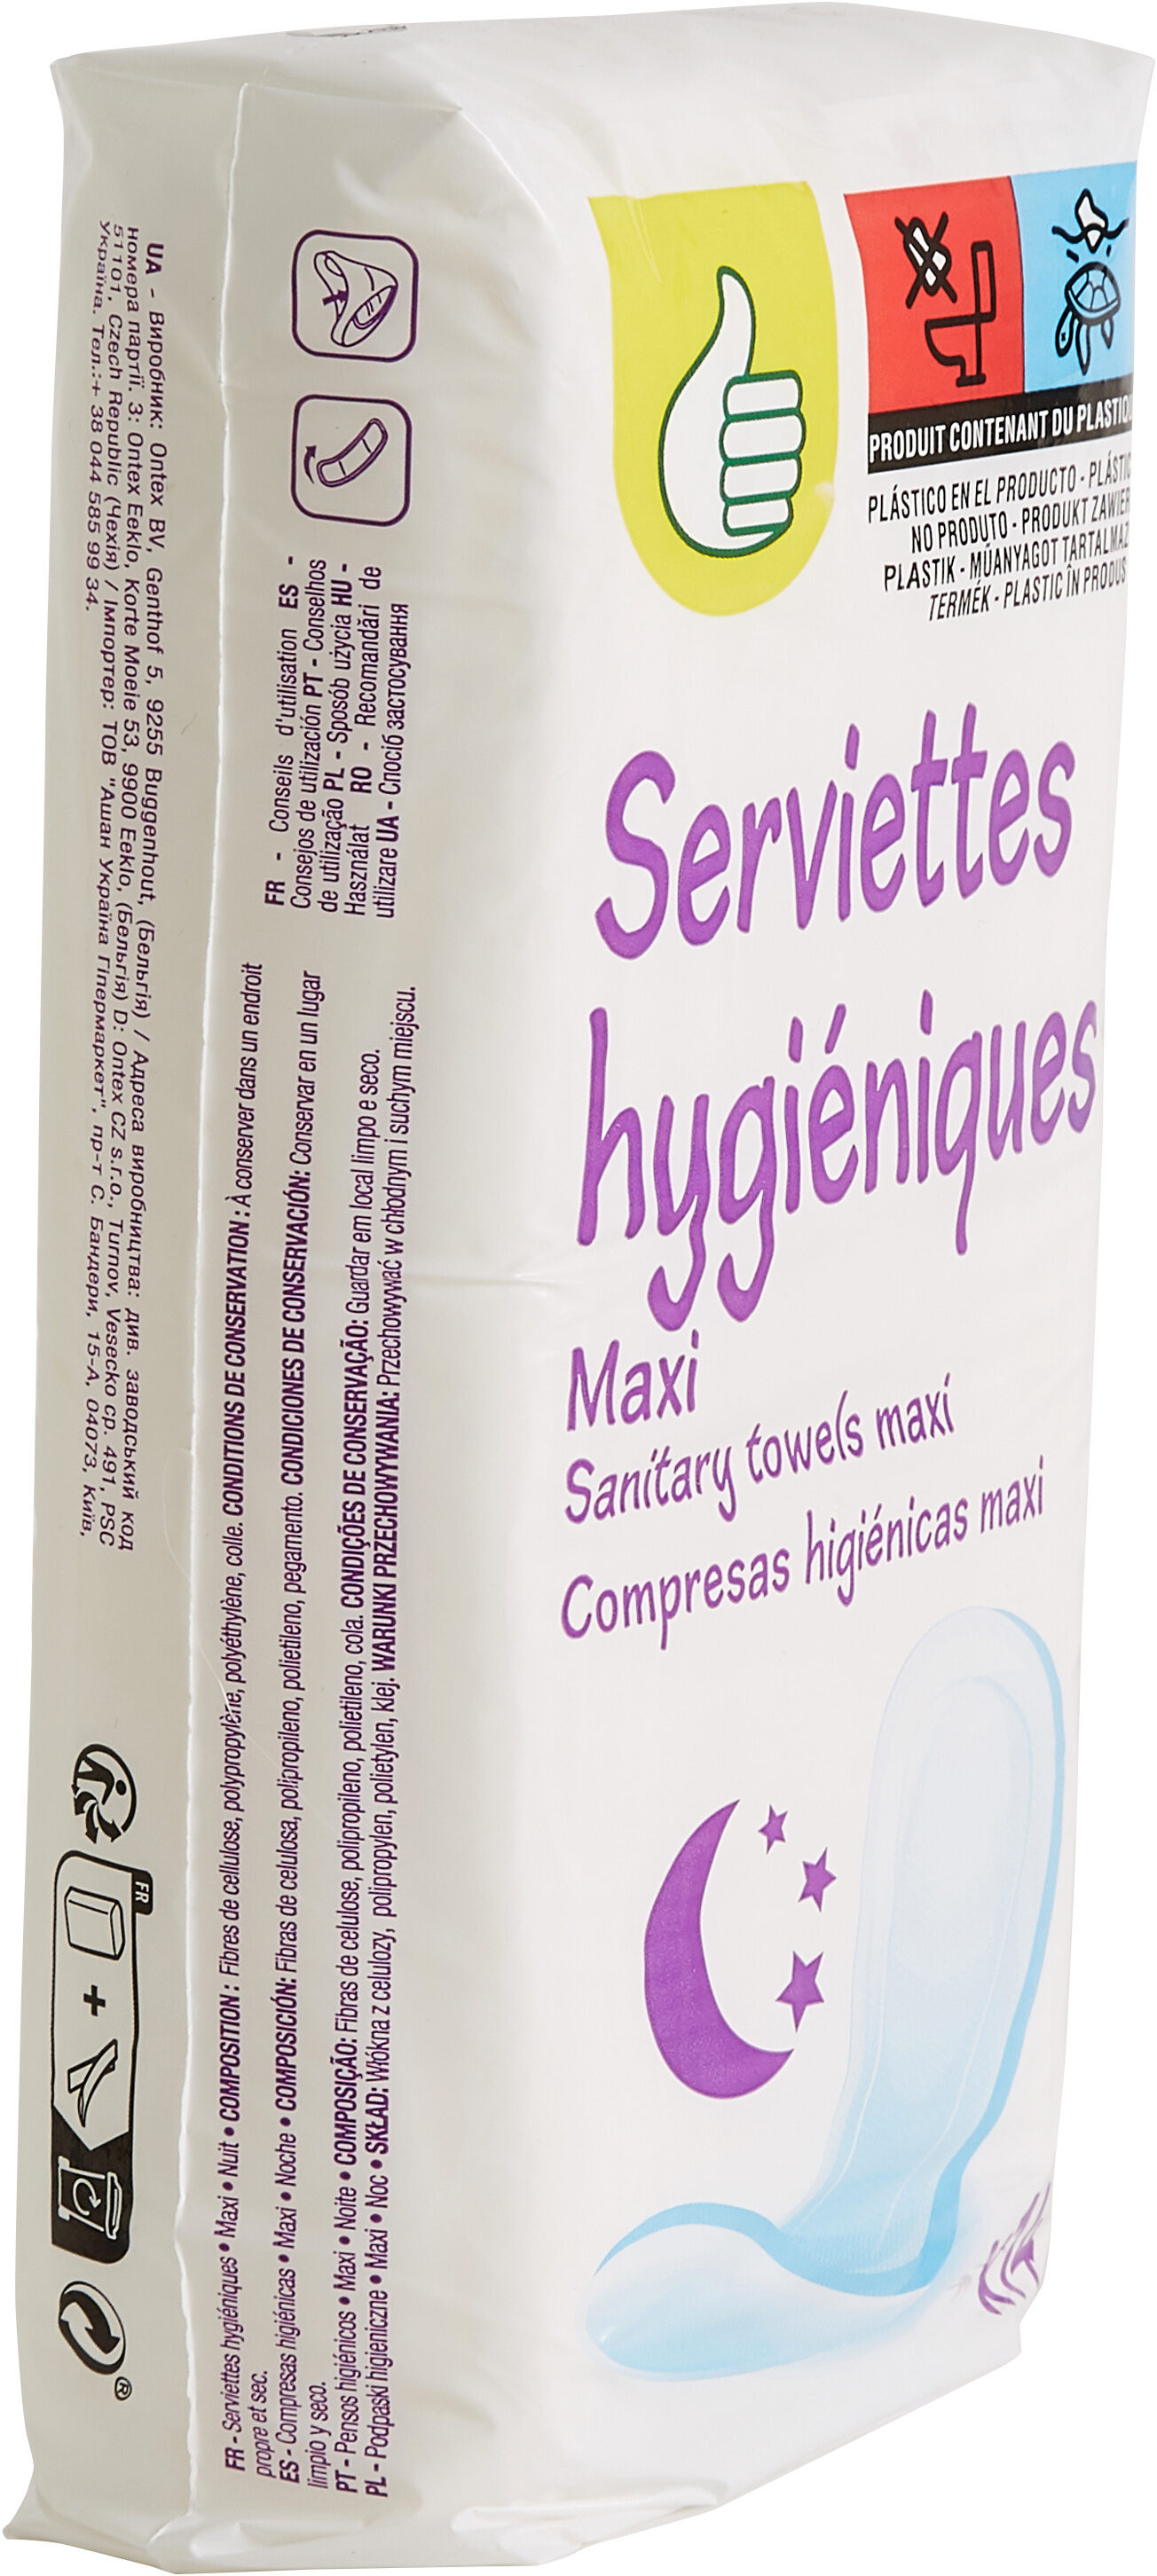 Serviettes hygiéniques Maxi Nuit x14 - Produit - fr